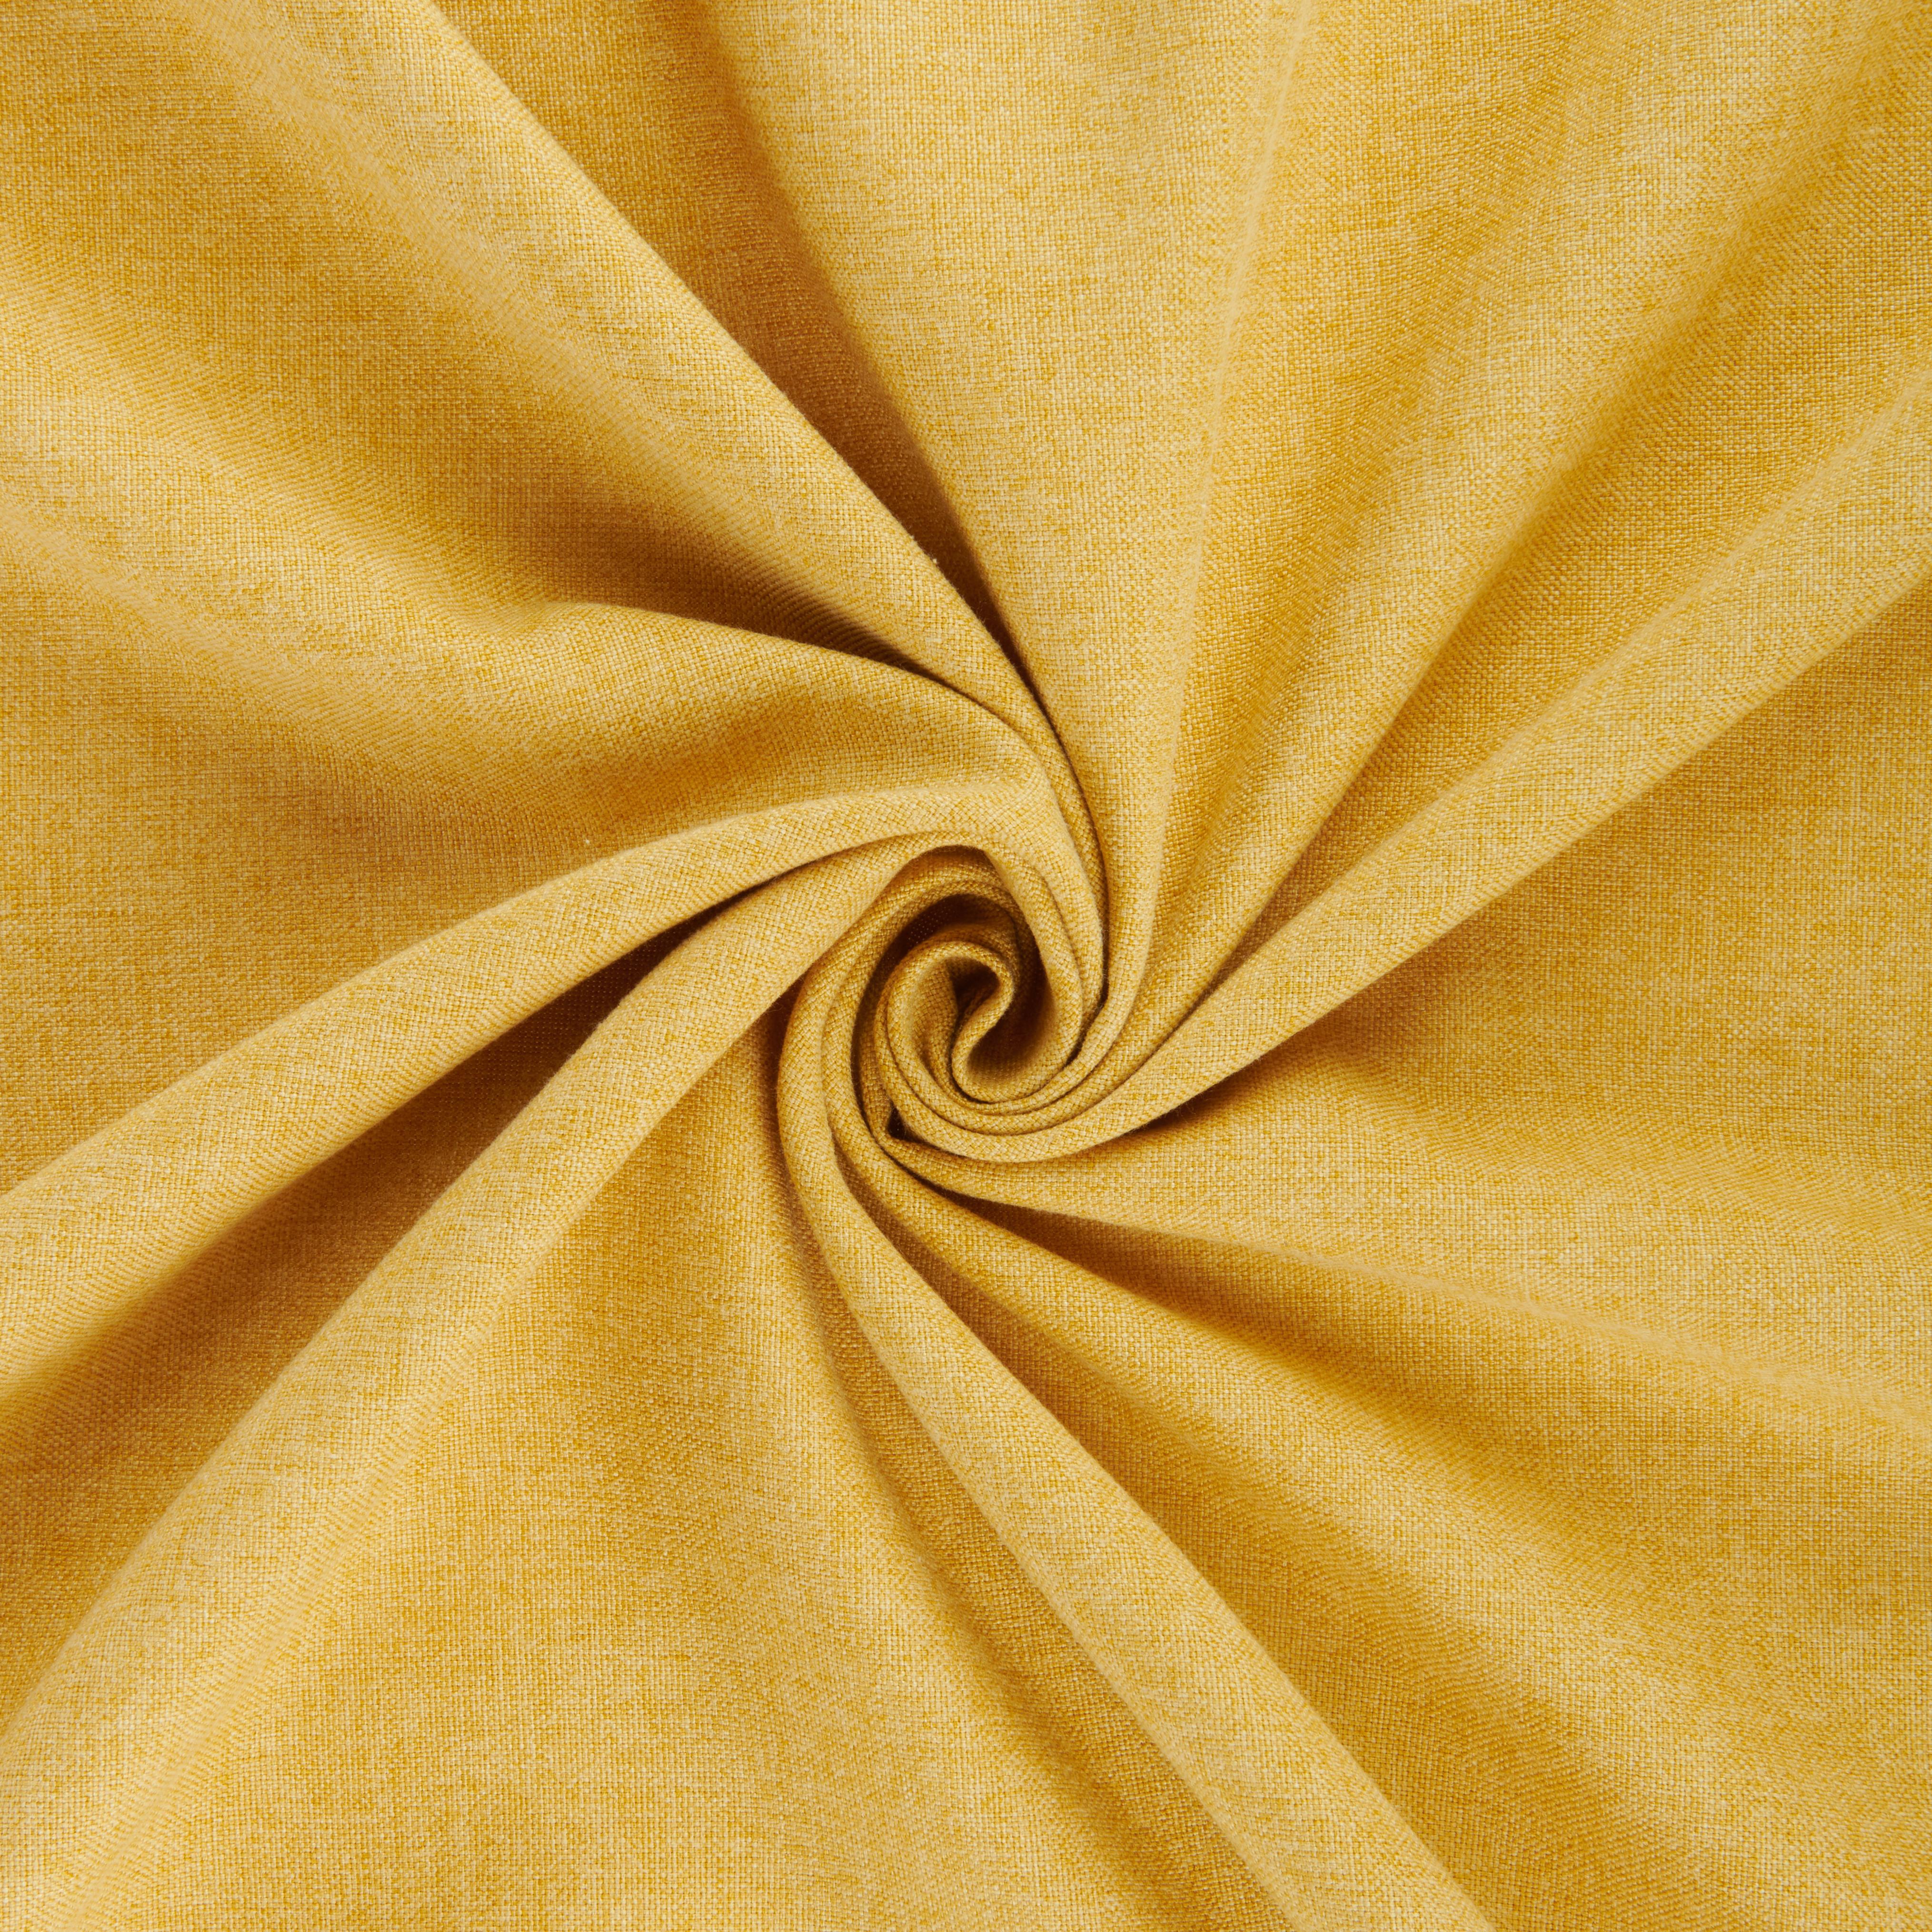 Gotova Zavjesa Urlich - žuta, tekstil (135/245cm) - Modern Living